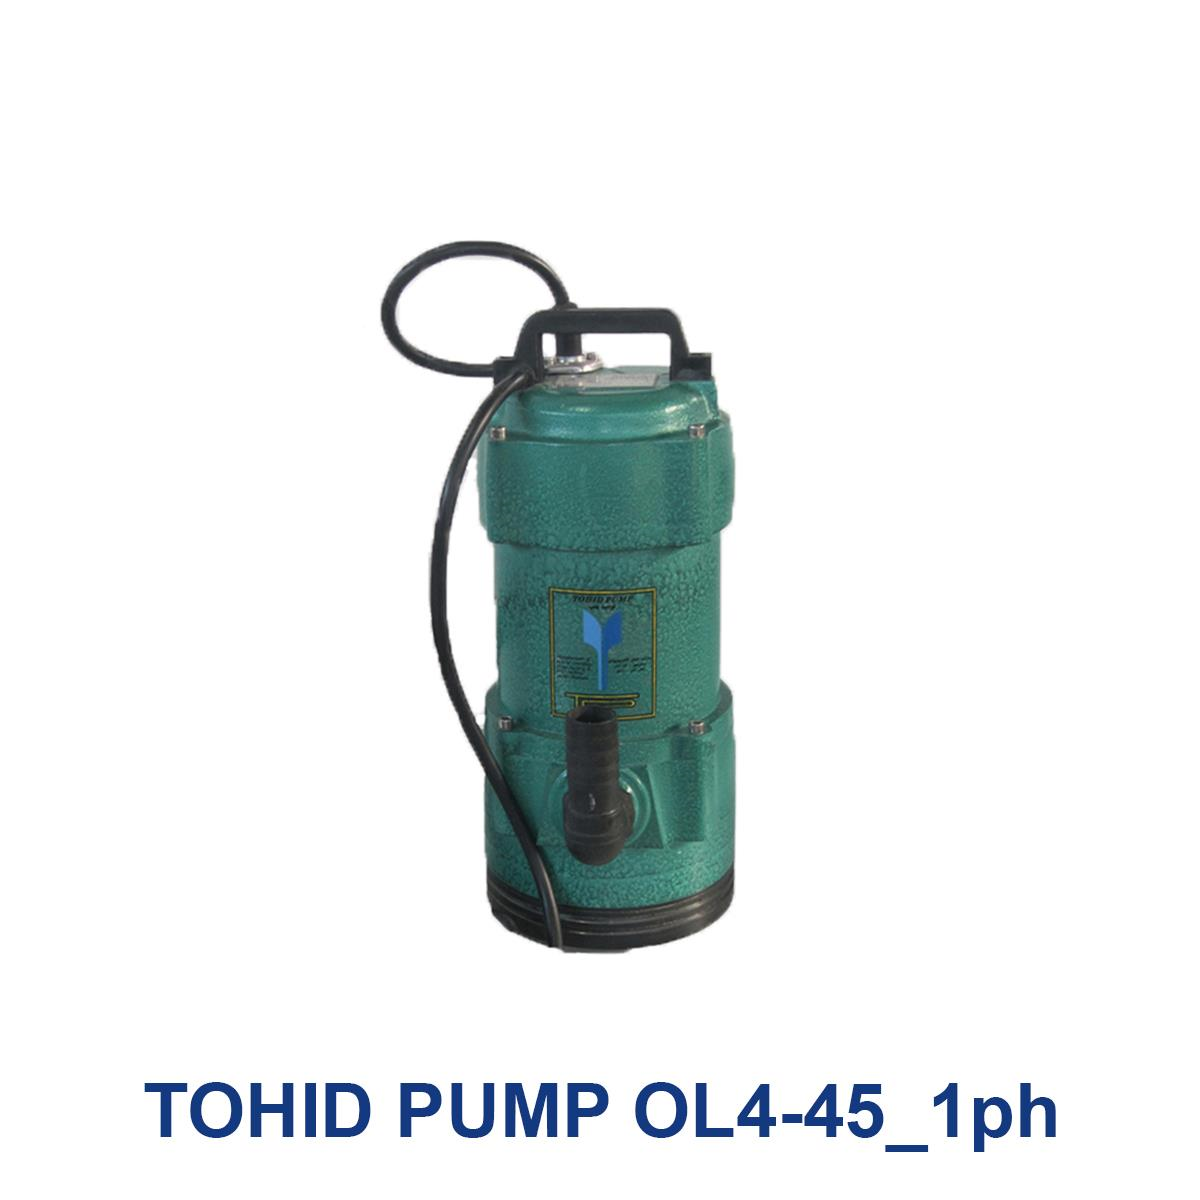 TOHID-PUMP-OL4-45_1ph